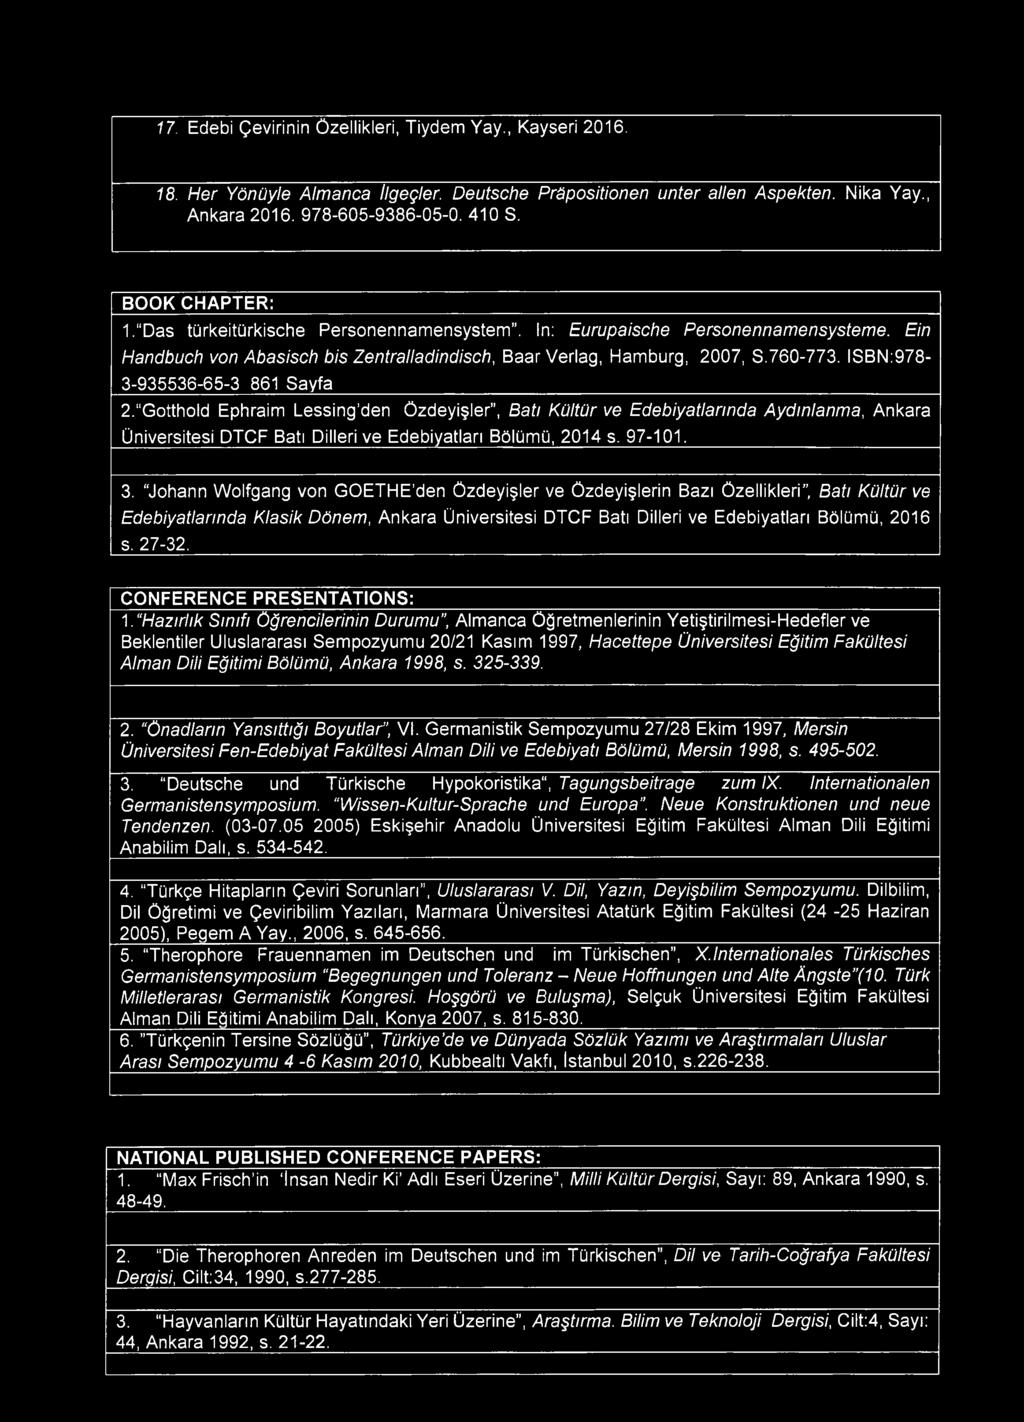 ISBN:978-3-935536-65-3 861 Sayfa 2. Gotthold Ephraim Lessing den Özdeyişler, Batı Kültür ve Edebiyatlarında Aydınlanma, Ankara Üniversitesi DTCF Batı Dilleri ve Edebiyatları Bölümü, 2014 s. 97-101, 3.